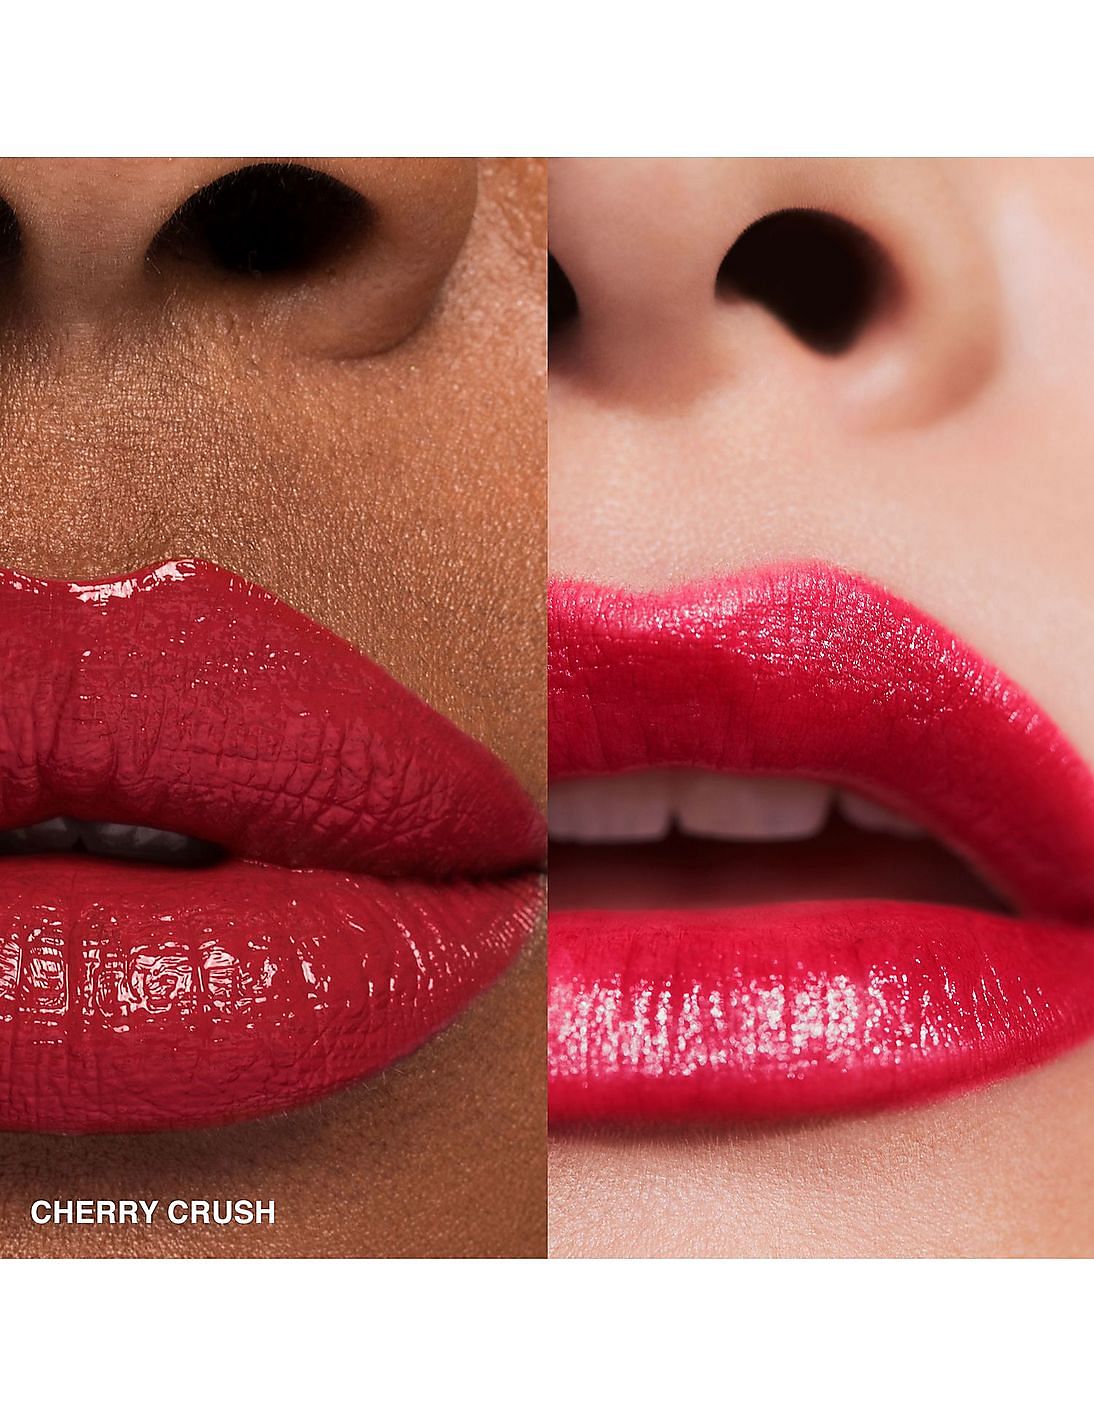 Cherry crush website